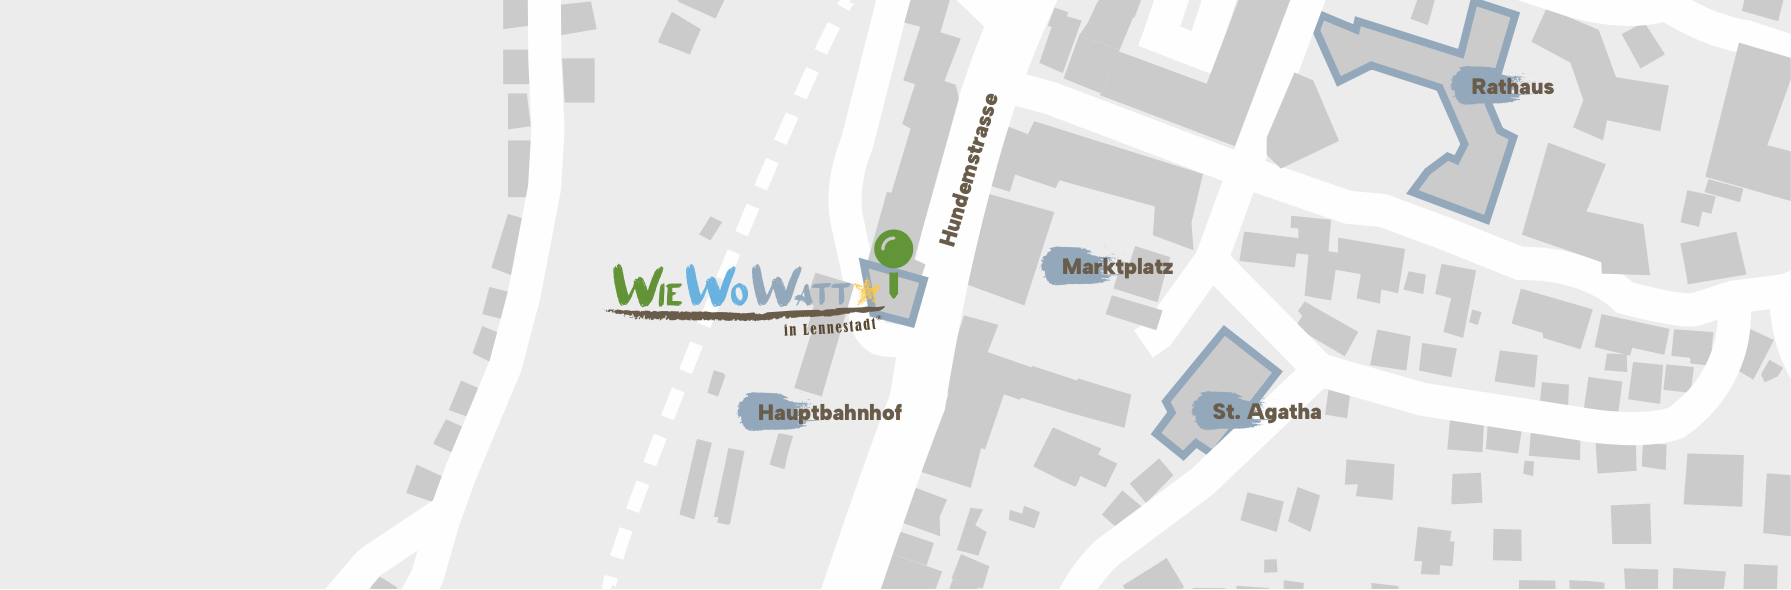 eine karte zeigt den Standort von Wie Wo Watt in Lennestadt